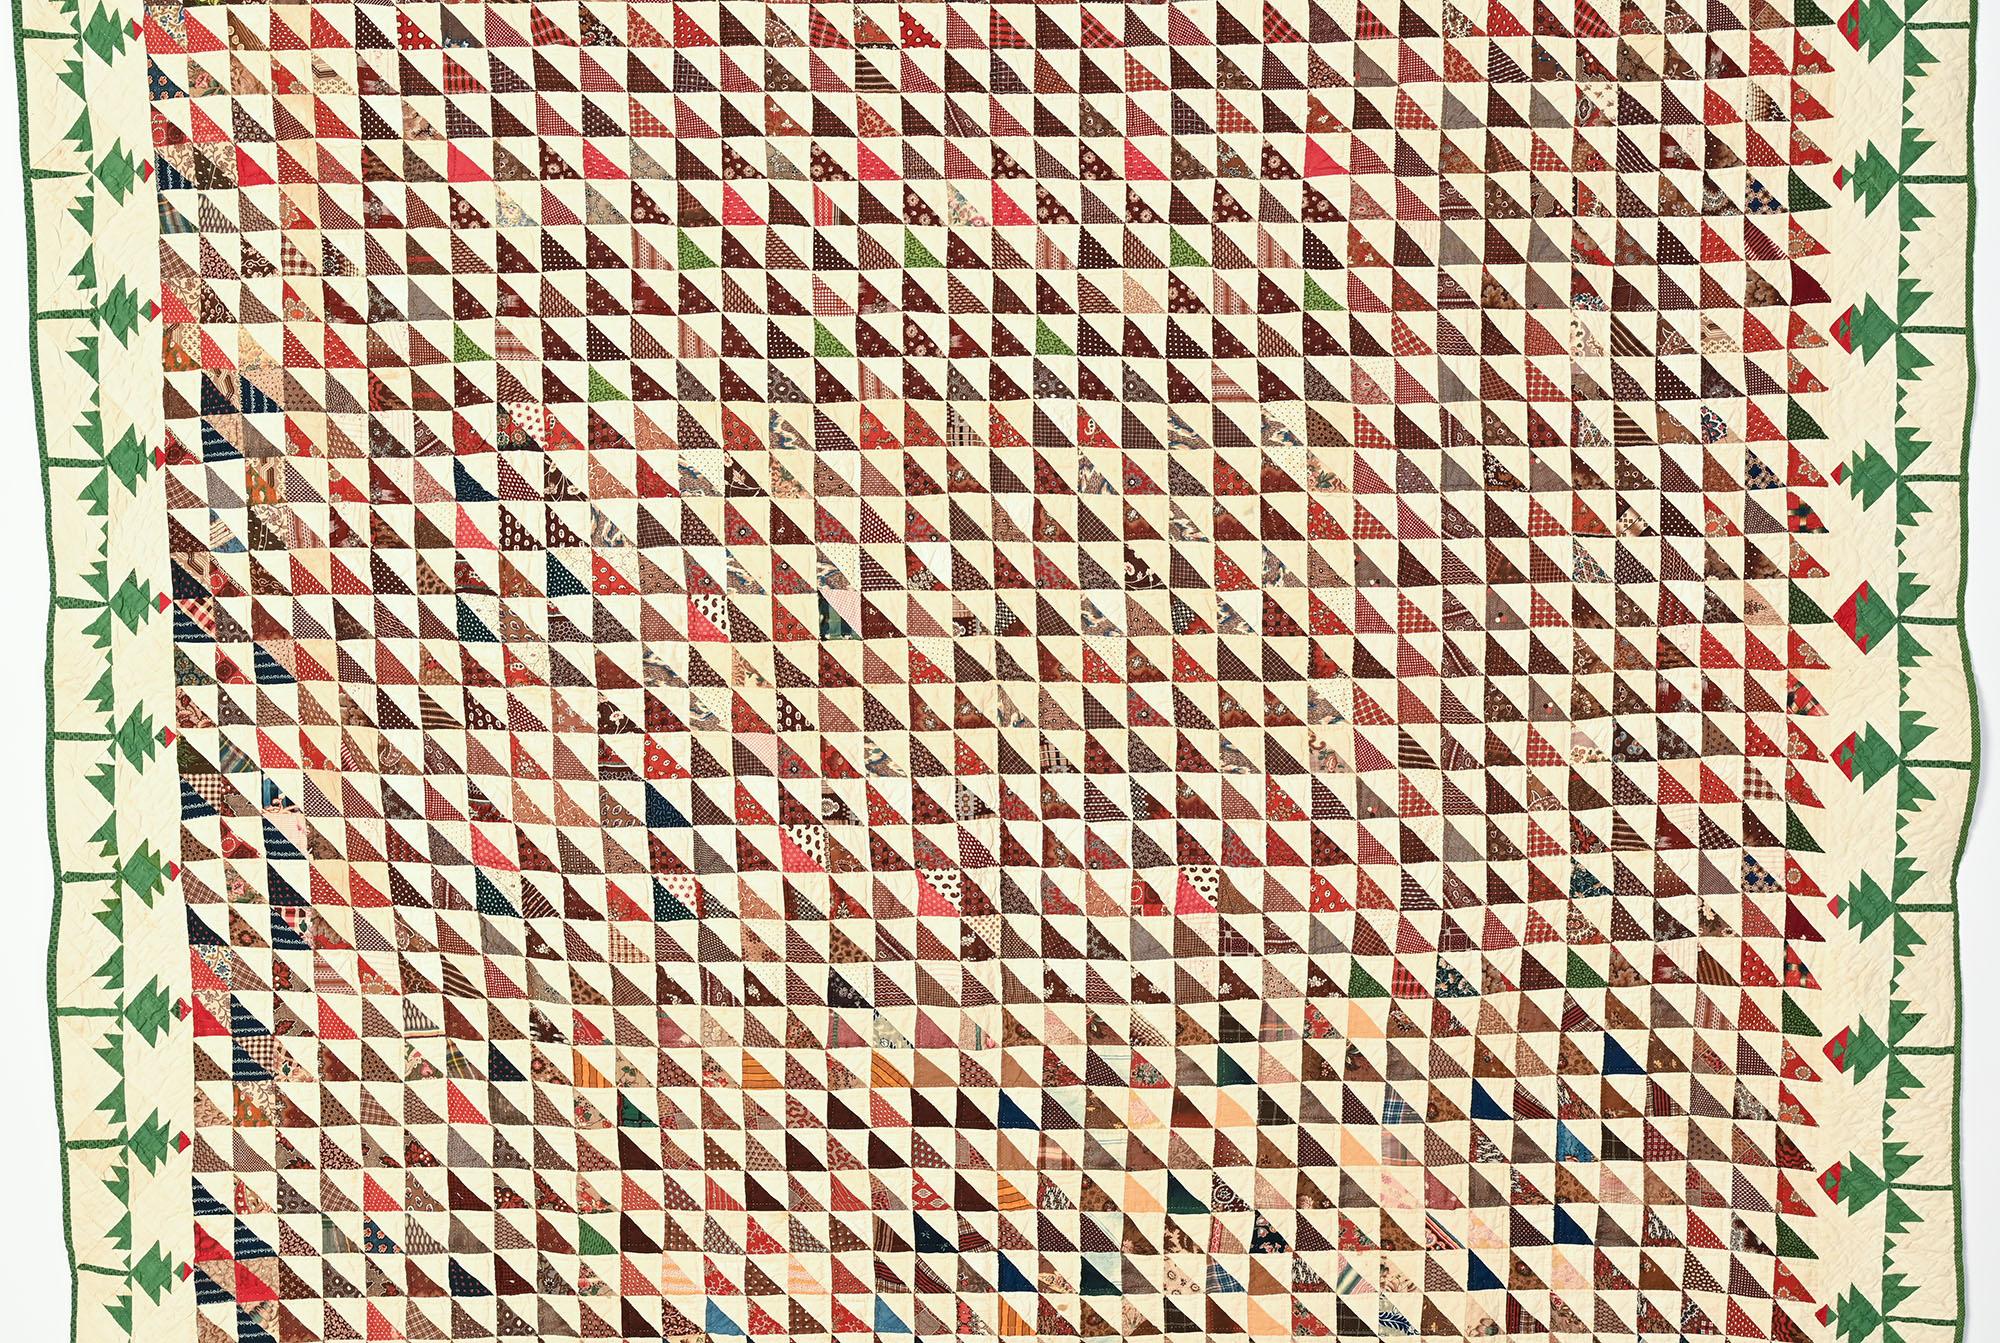 Tausend-Pyramiden-Quilt mit einer wunderschönen Umrandung aus Feldlilien (ein Muster, das man nicht oft sieht). Die Dreiecke sind aus einer schönen Auswahl von  meist bedruckte Stoffe aus dem letzten Viertel des 19. Jahrhunderts. Das ungewöhnliche